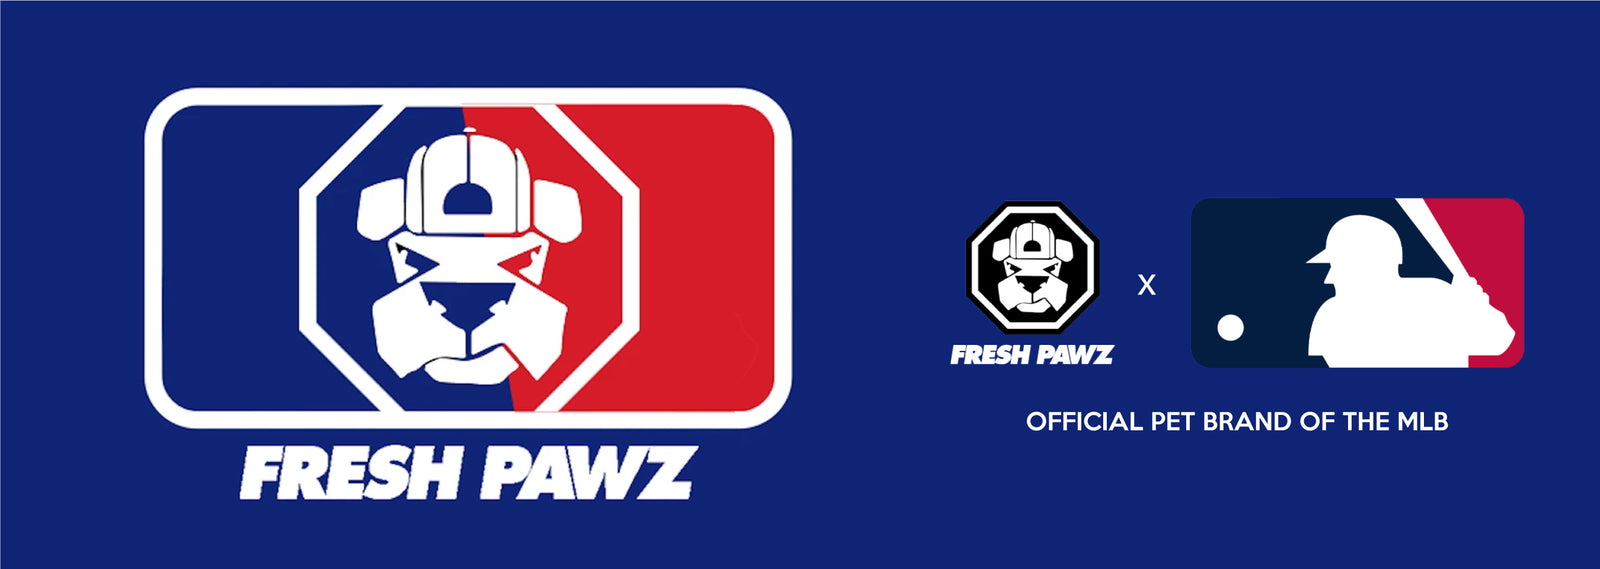 Boston Celtics x Fresh Pawz - Hardwood Hoodie, Dog Clothing